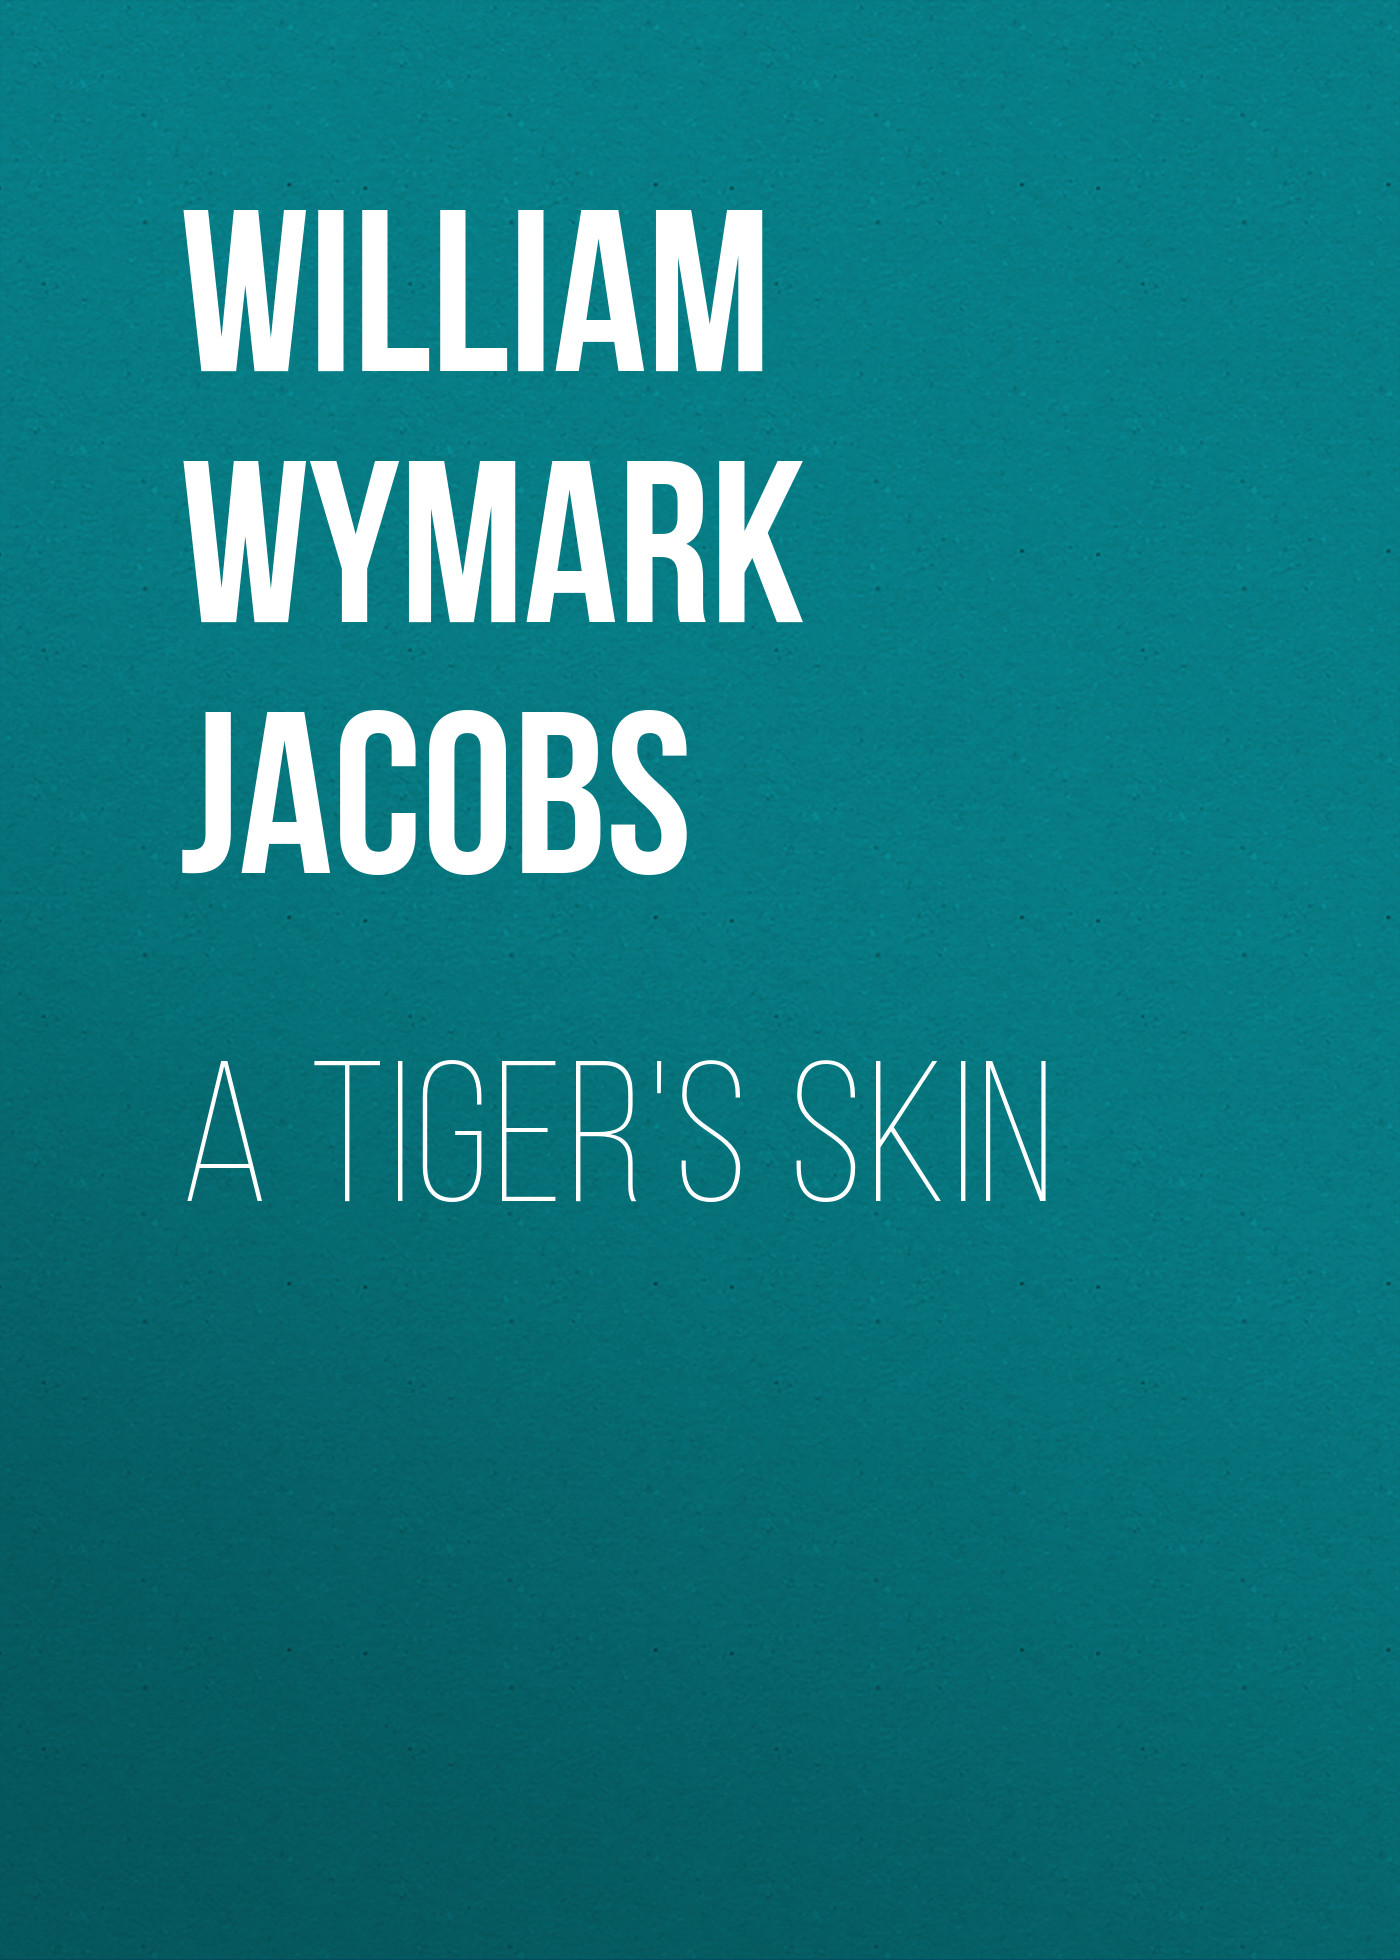 Книга A Tiger's Skin из серии , созданная William Wymark Jacobs, может относится к жанру Зарубежный юмор, Зарубежная старинная литература, Зарубежная классика. Стоимость электронной книги A Tiger's Skin с идентификатором 34844150 составляет 0 руб.